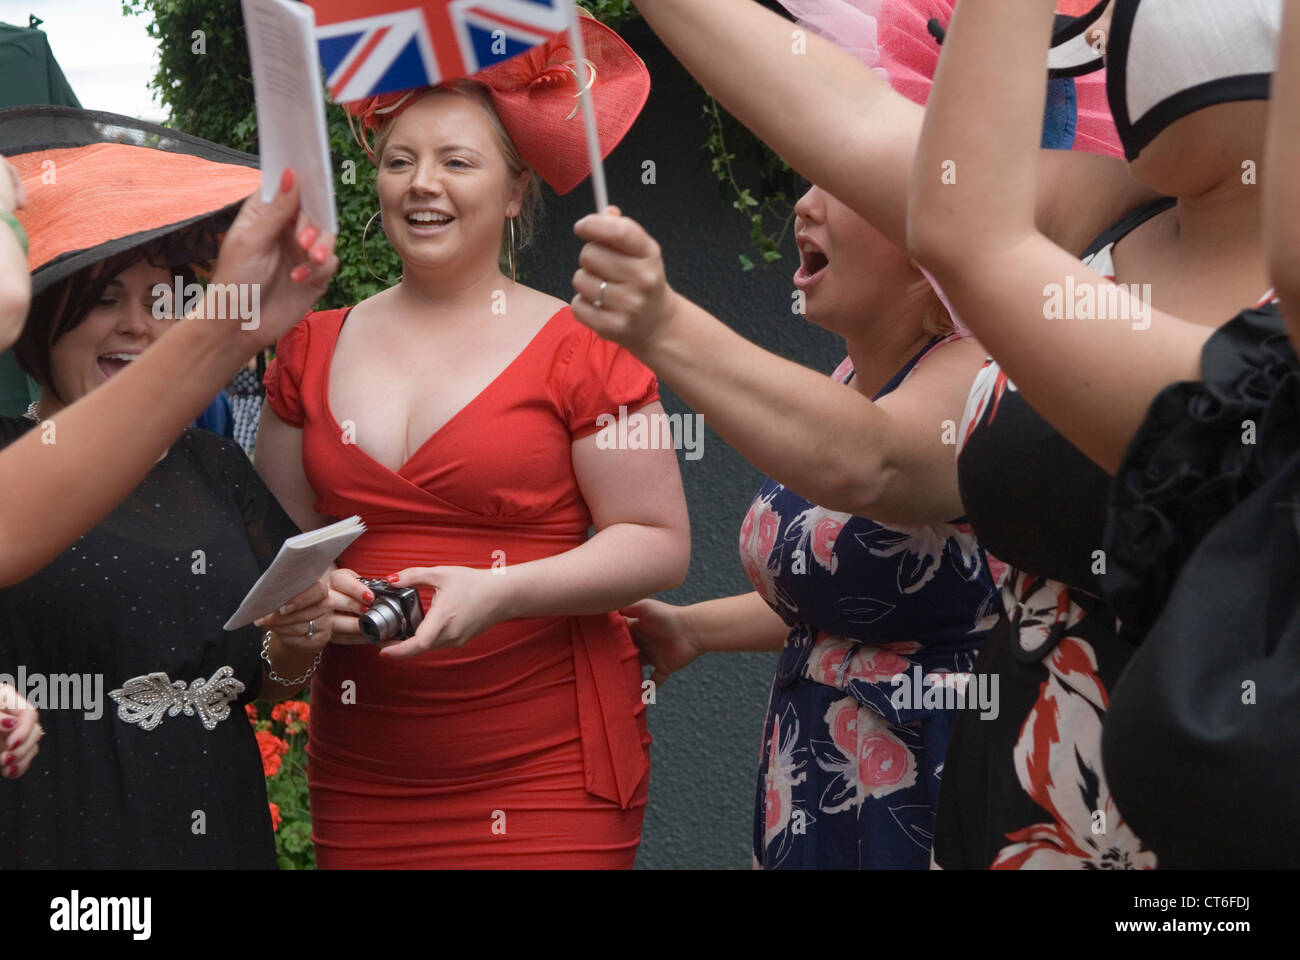 Chantant des chansons anglaises patriotiques à la fin de la journée en tant que Royal Ascot. Groupe de jeunes femmes adultes chantant après une journée de course de chevaux à Royal Ascot, Berkshire Royaume-Uni années 2016 2010 HOMER SYKES Banque D'Images